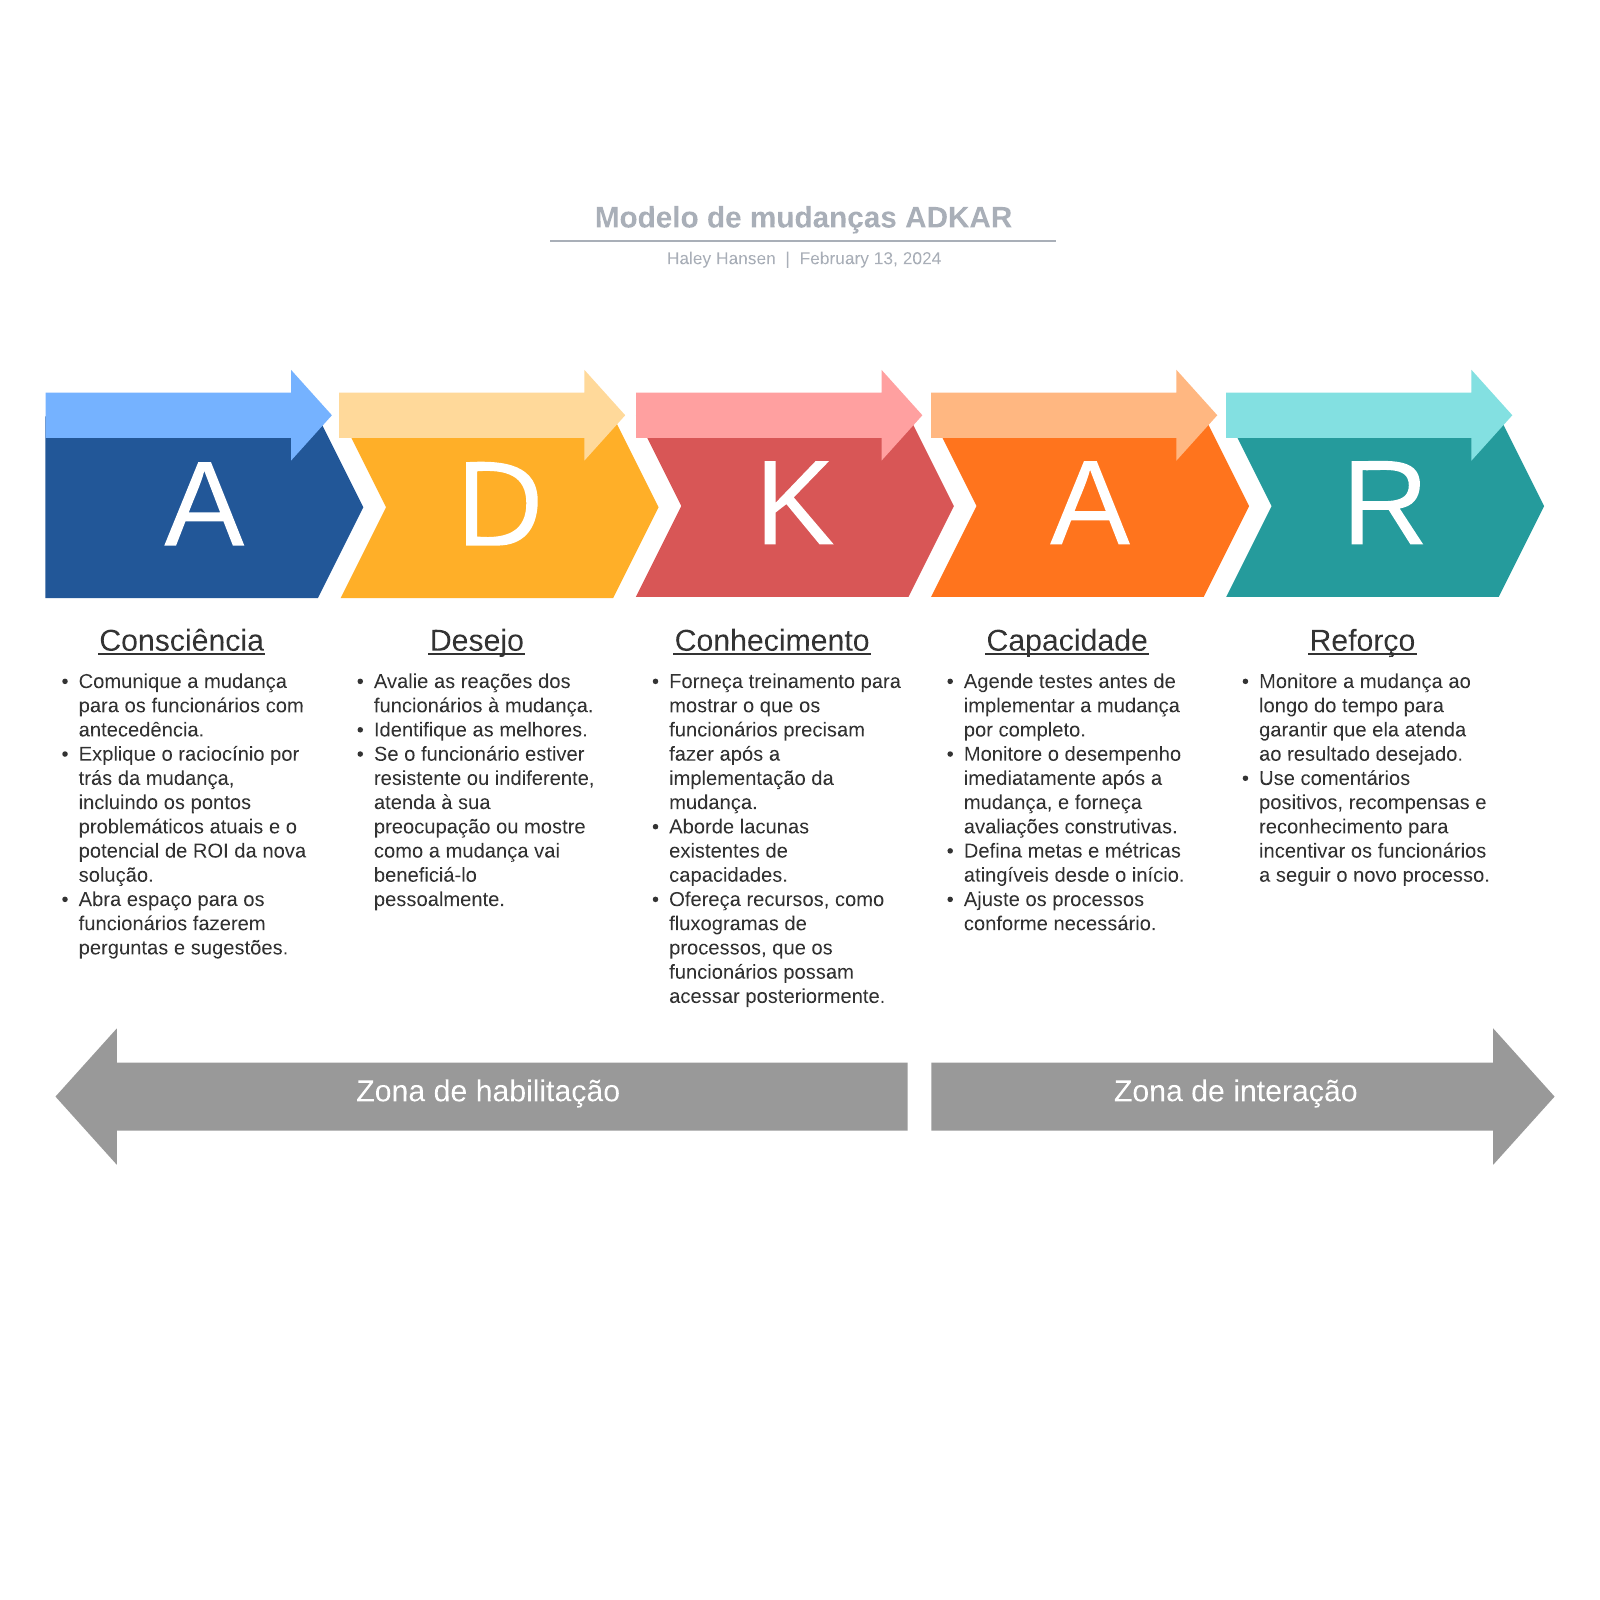 Modelo de mudanças ADKAR example